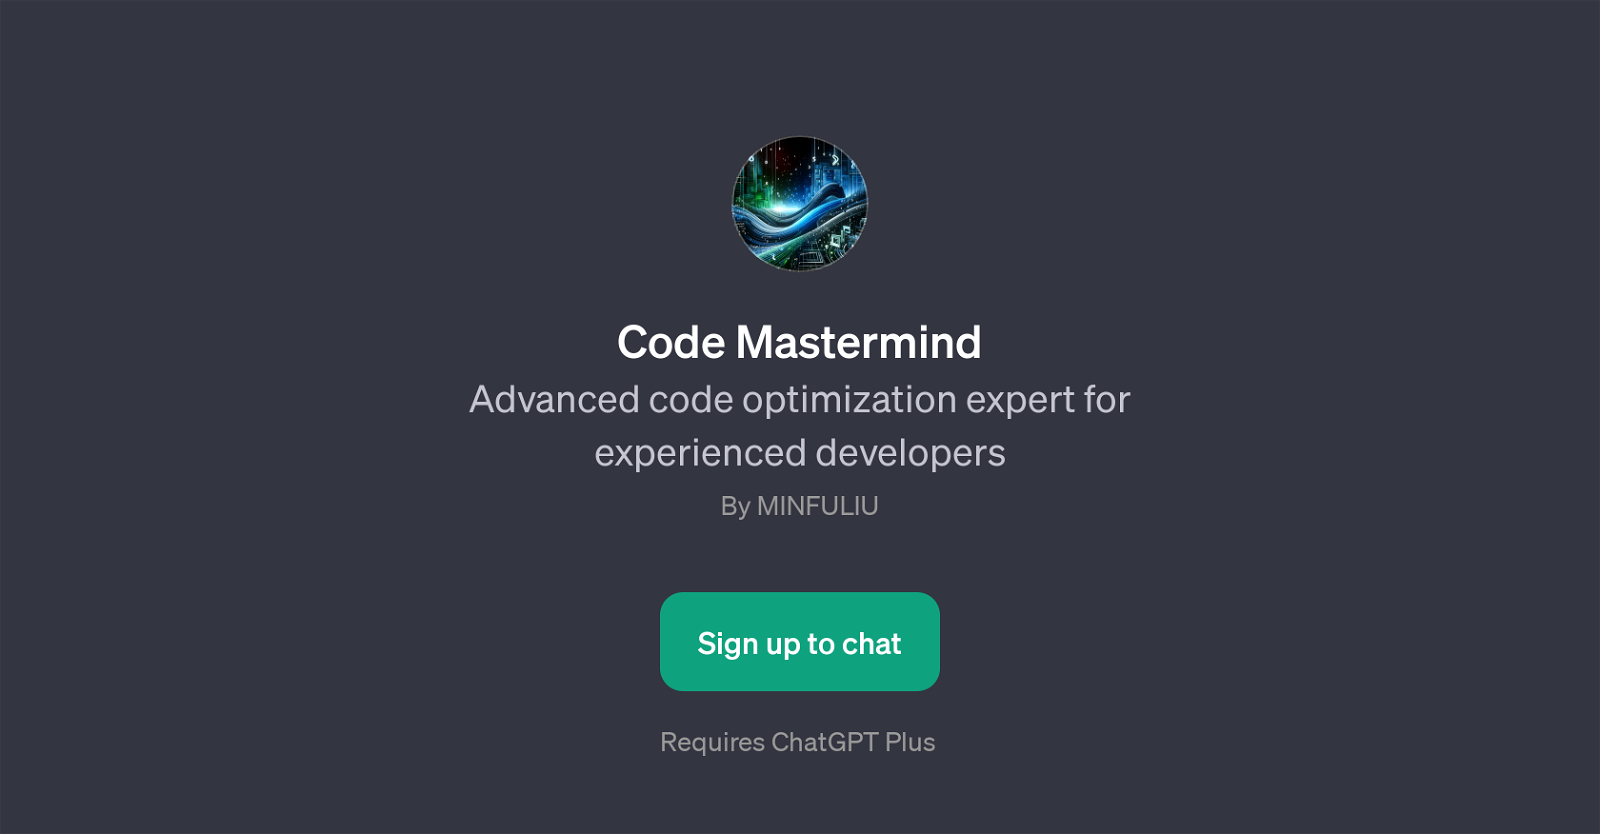 Code Mastermind website